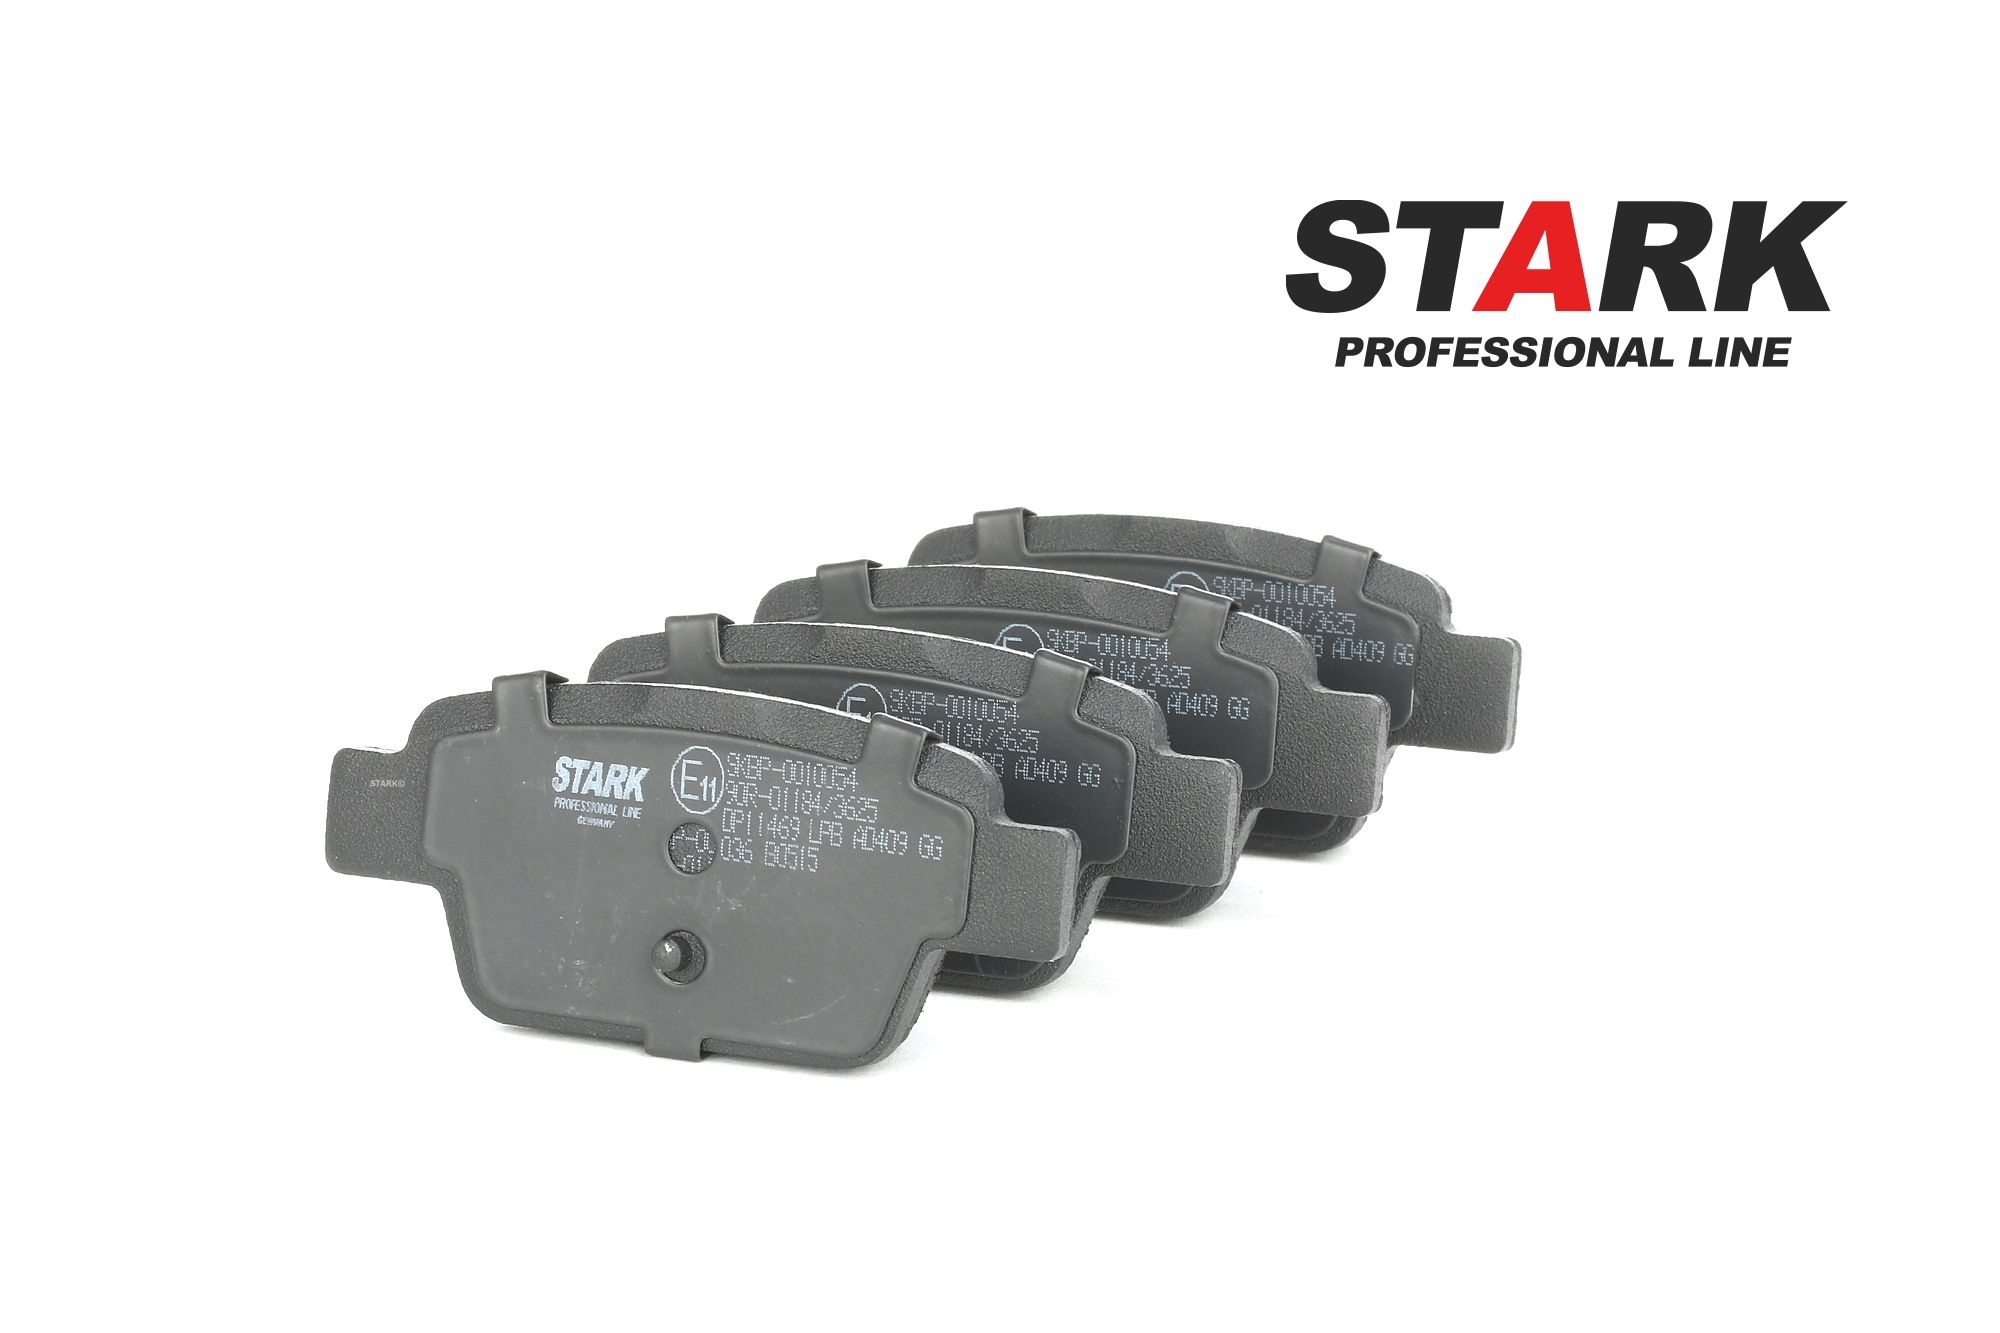 STARK Pastiglie dei freni Fiat SKBP-0010054 di qualità originale